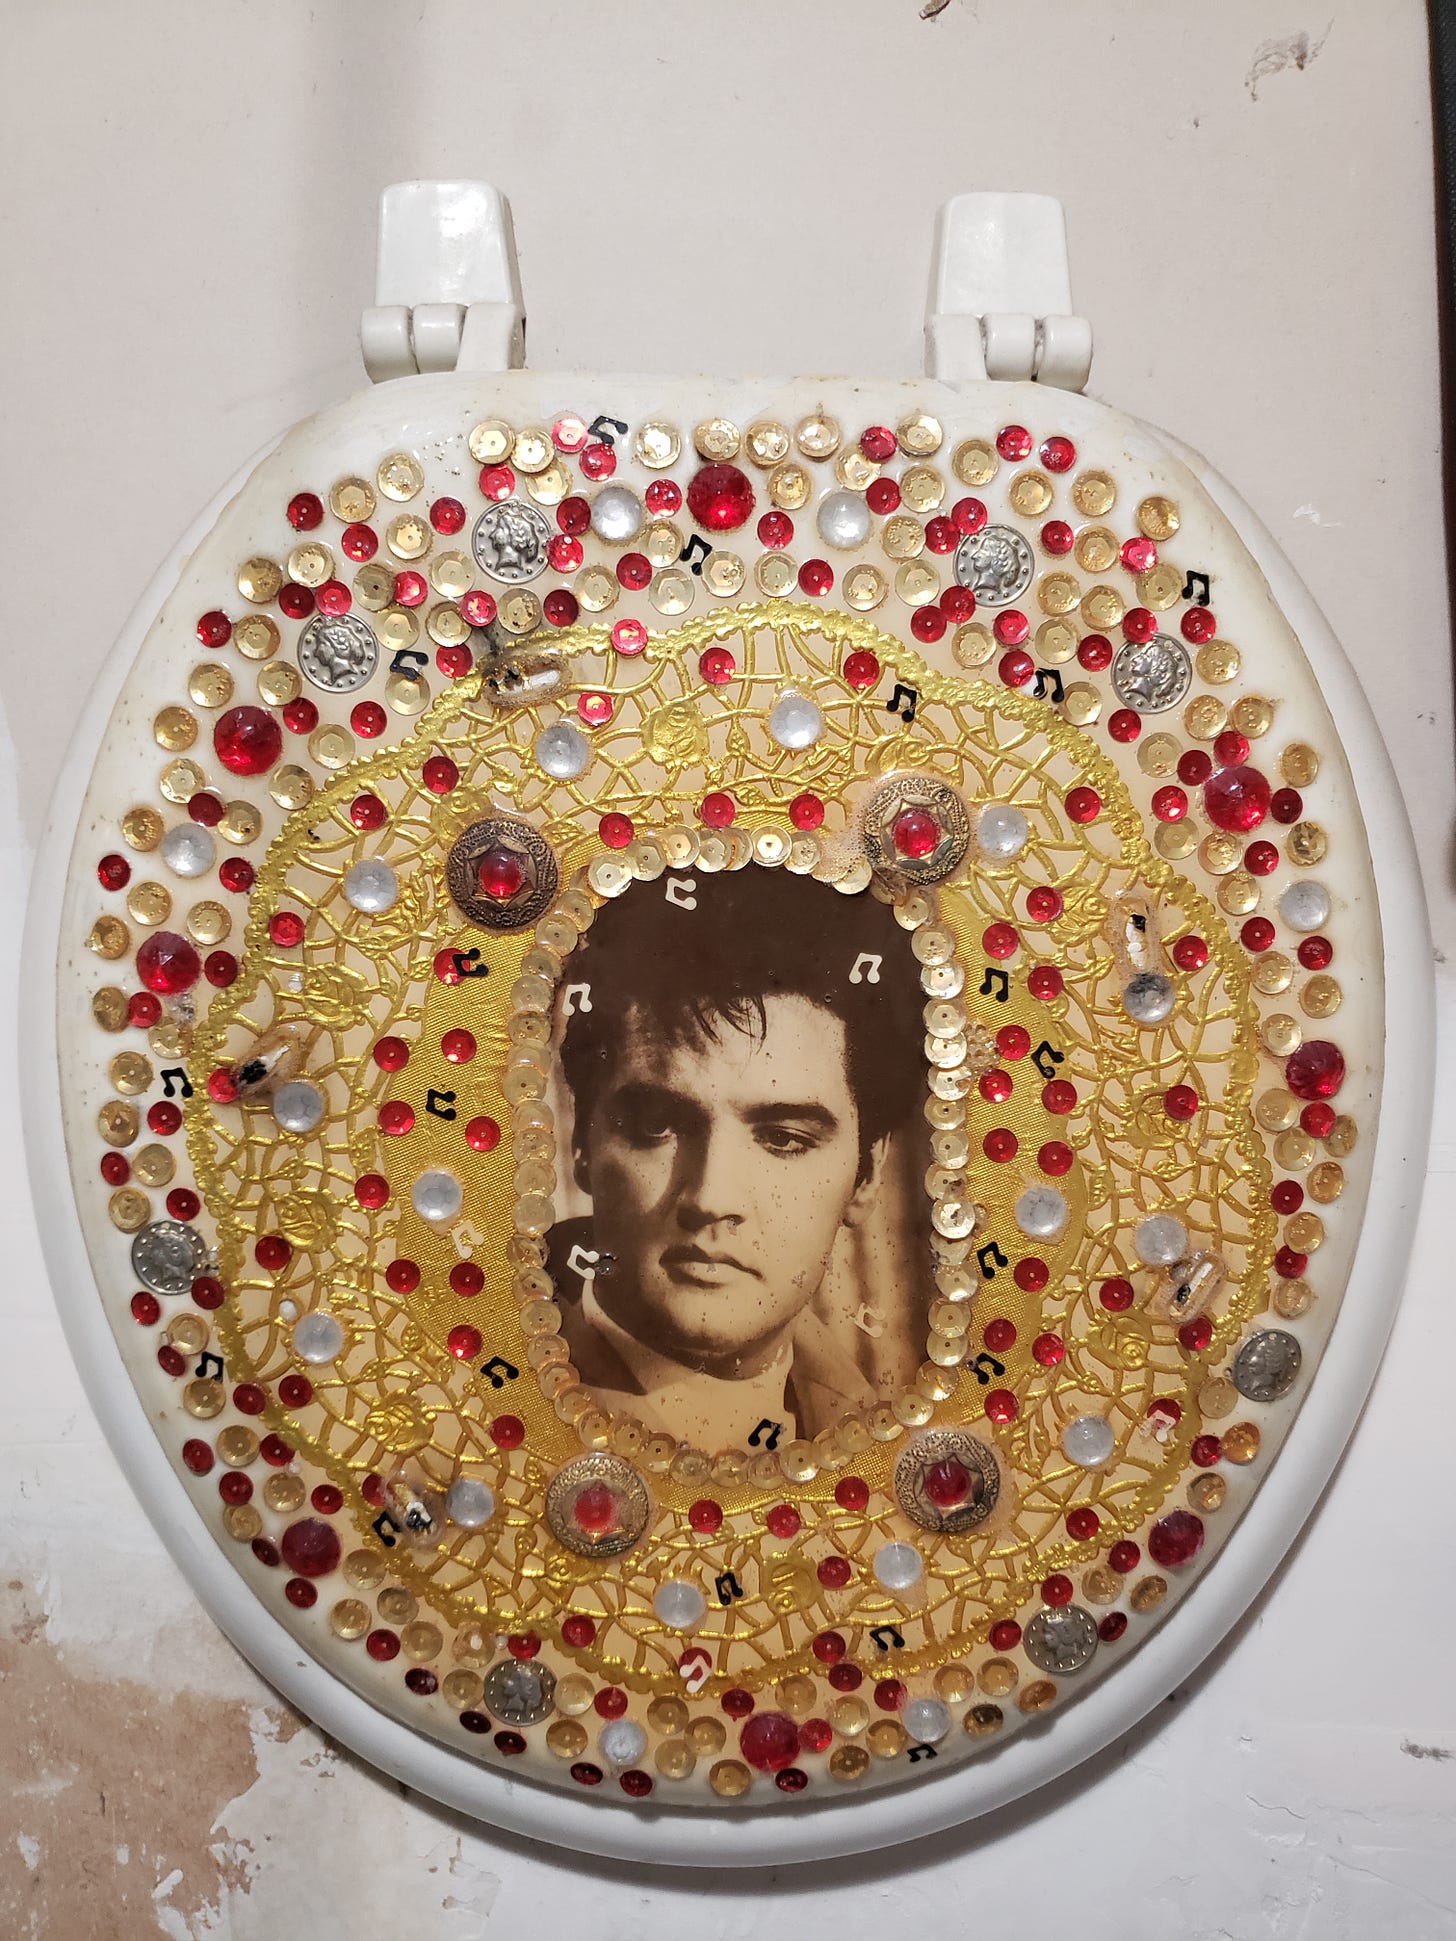 Elvis on a toilet seat